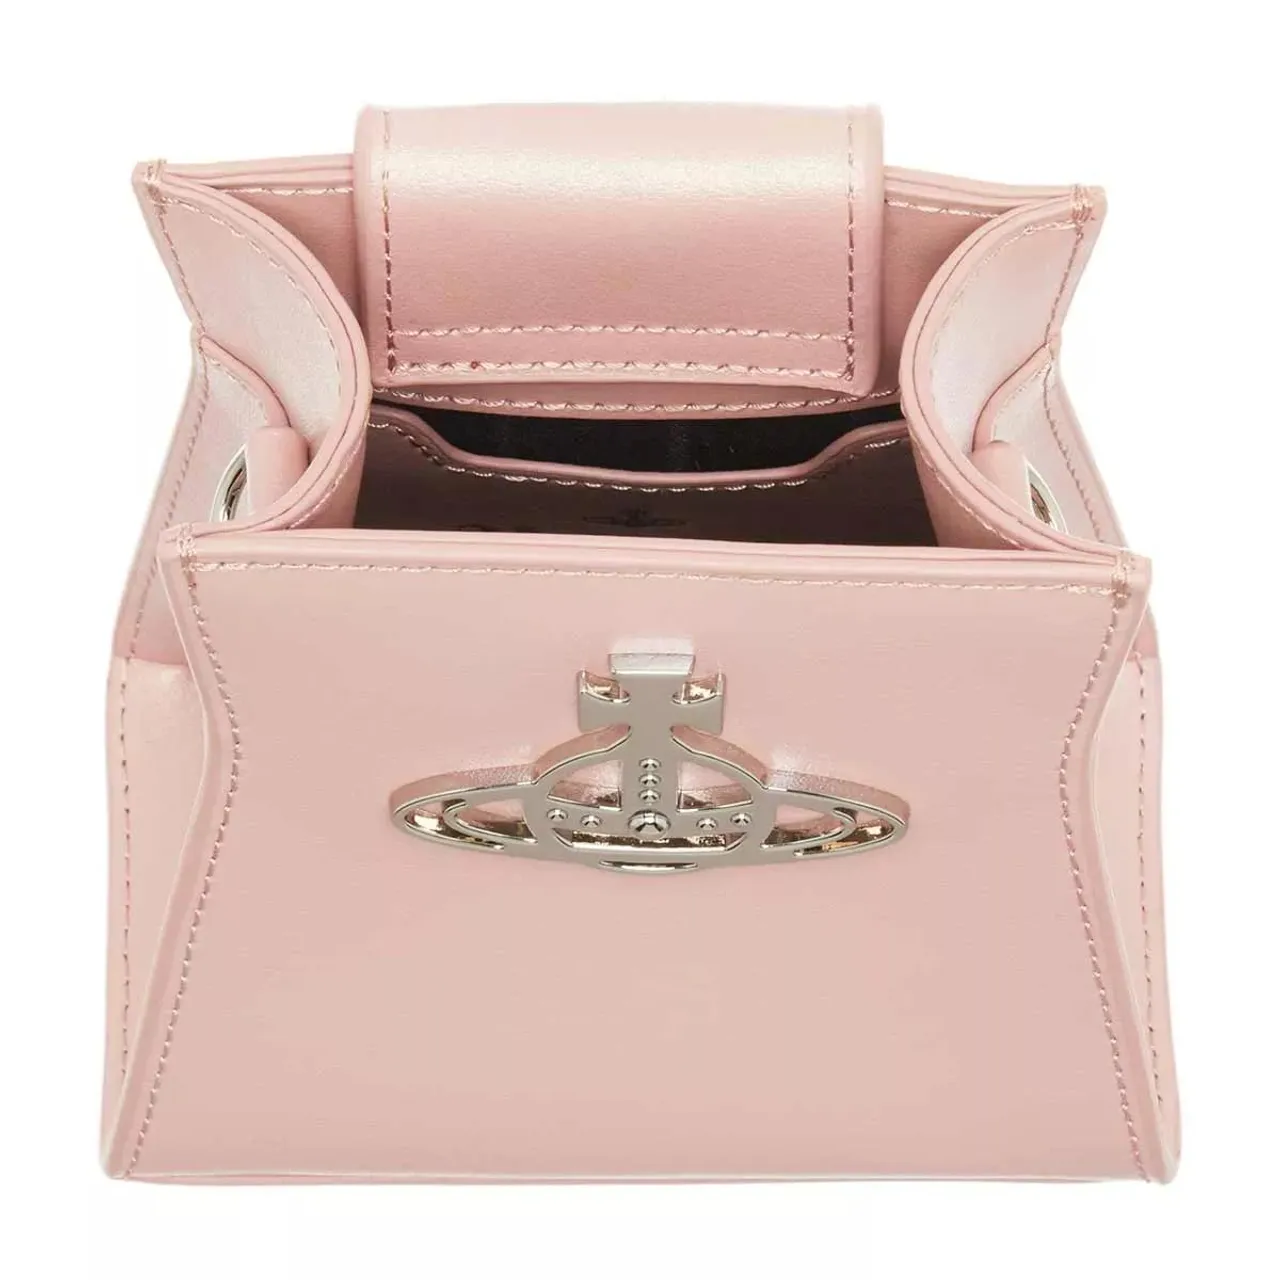 Handtaschen lila/pink Minitasche One Size